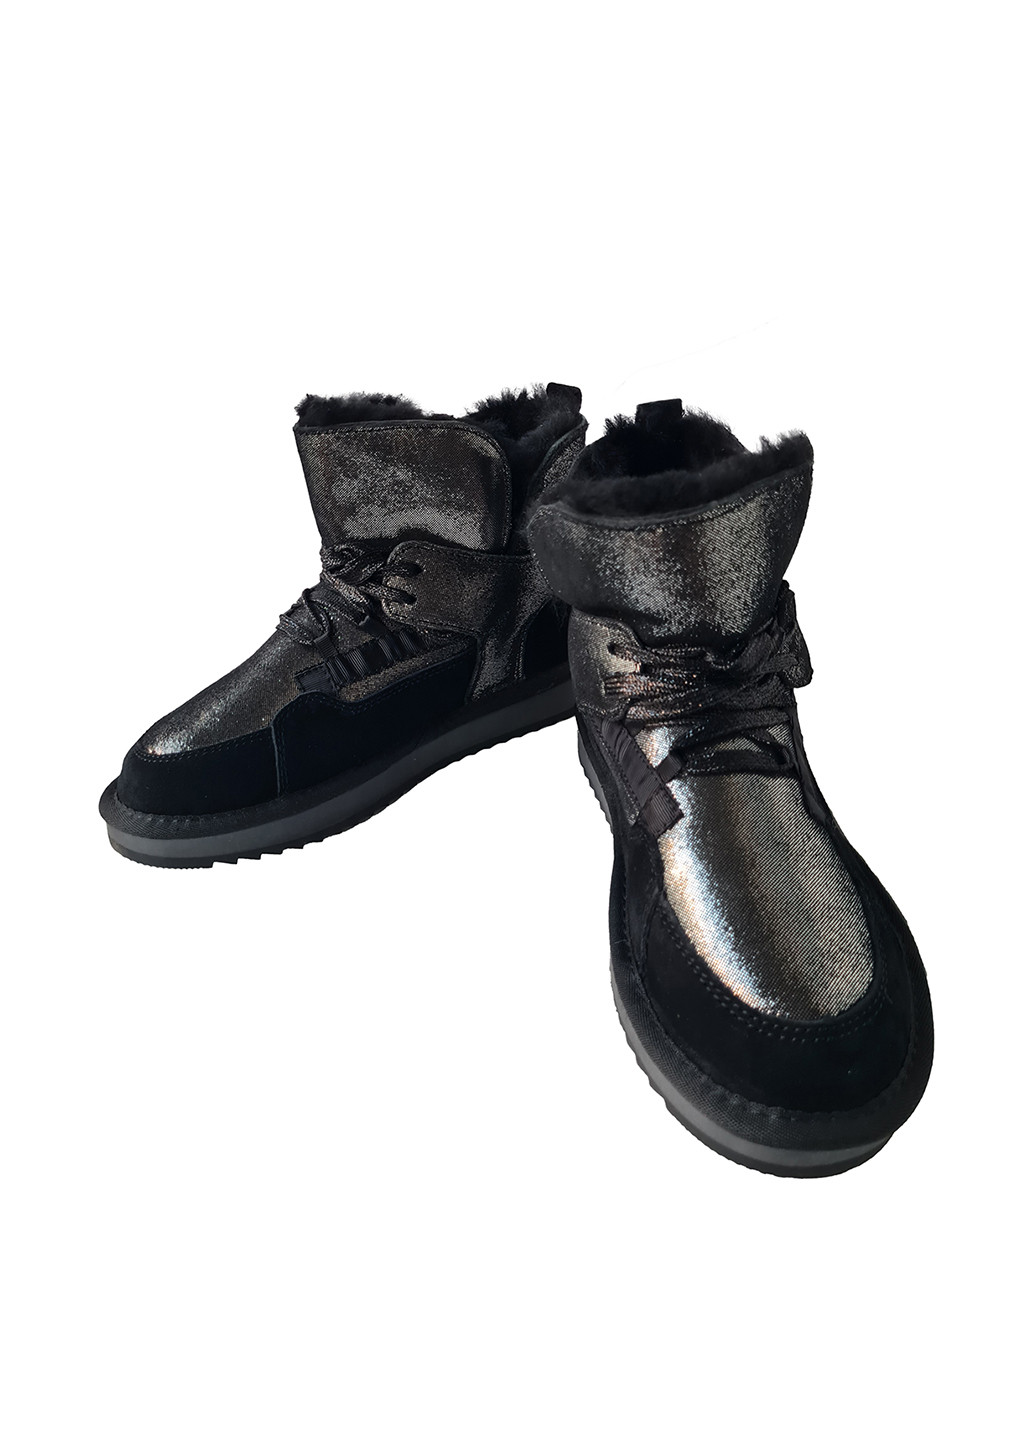 Черные полусапоги Violeta с мехом, со шнуровкой, с глиттером